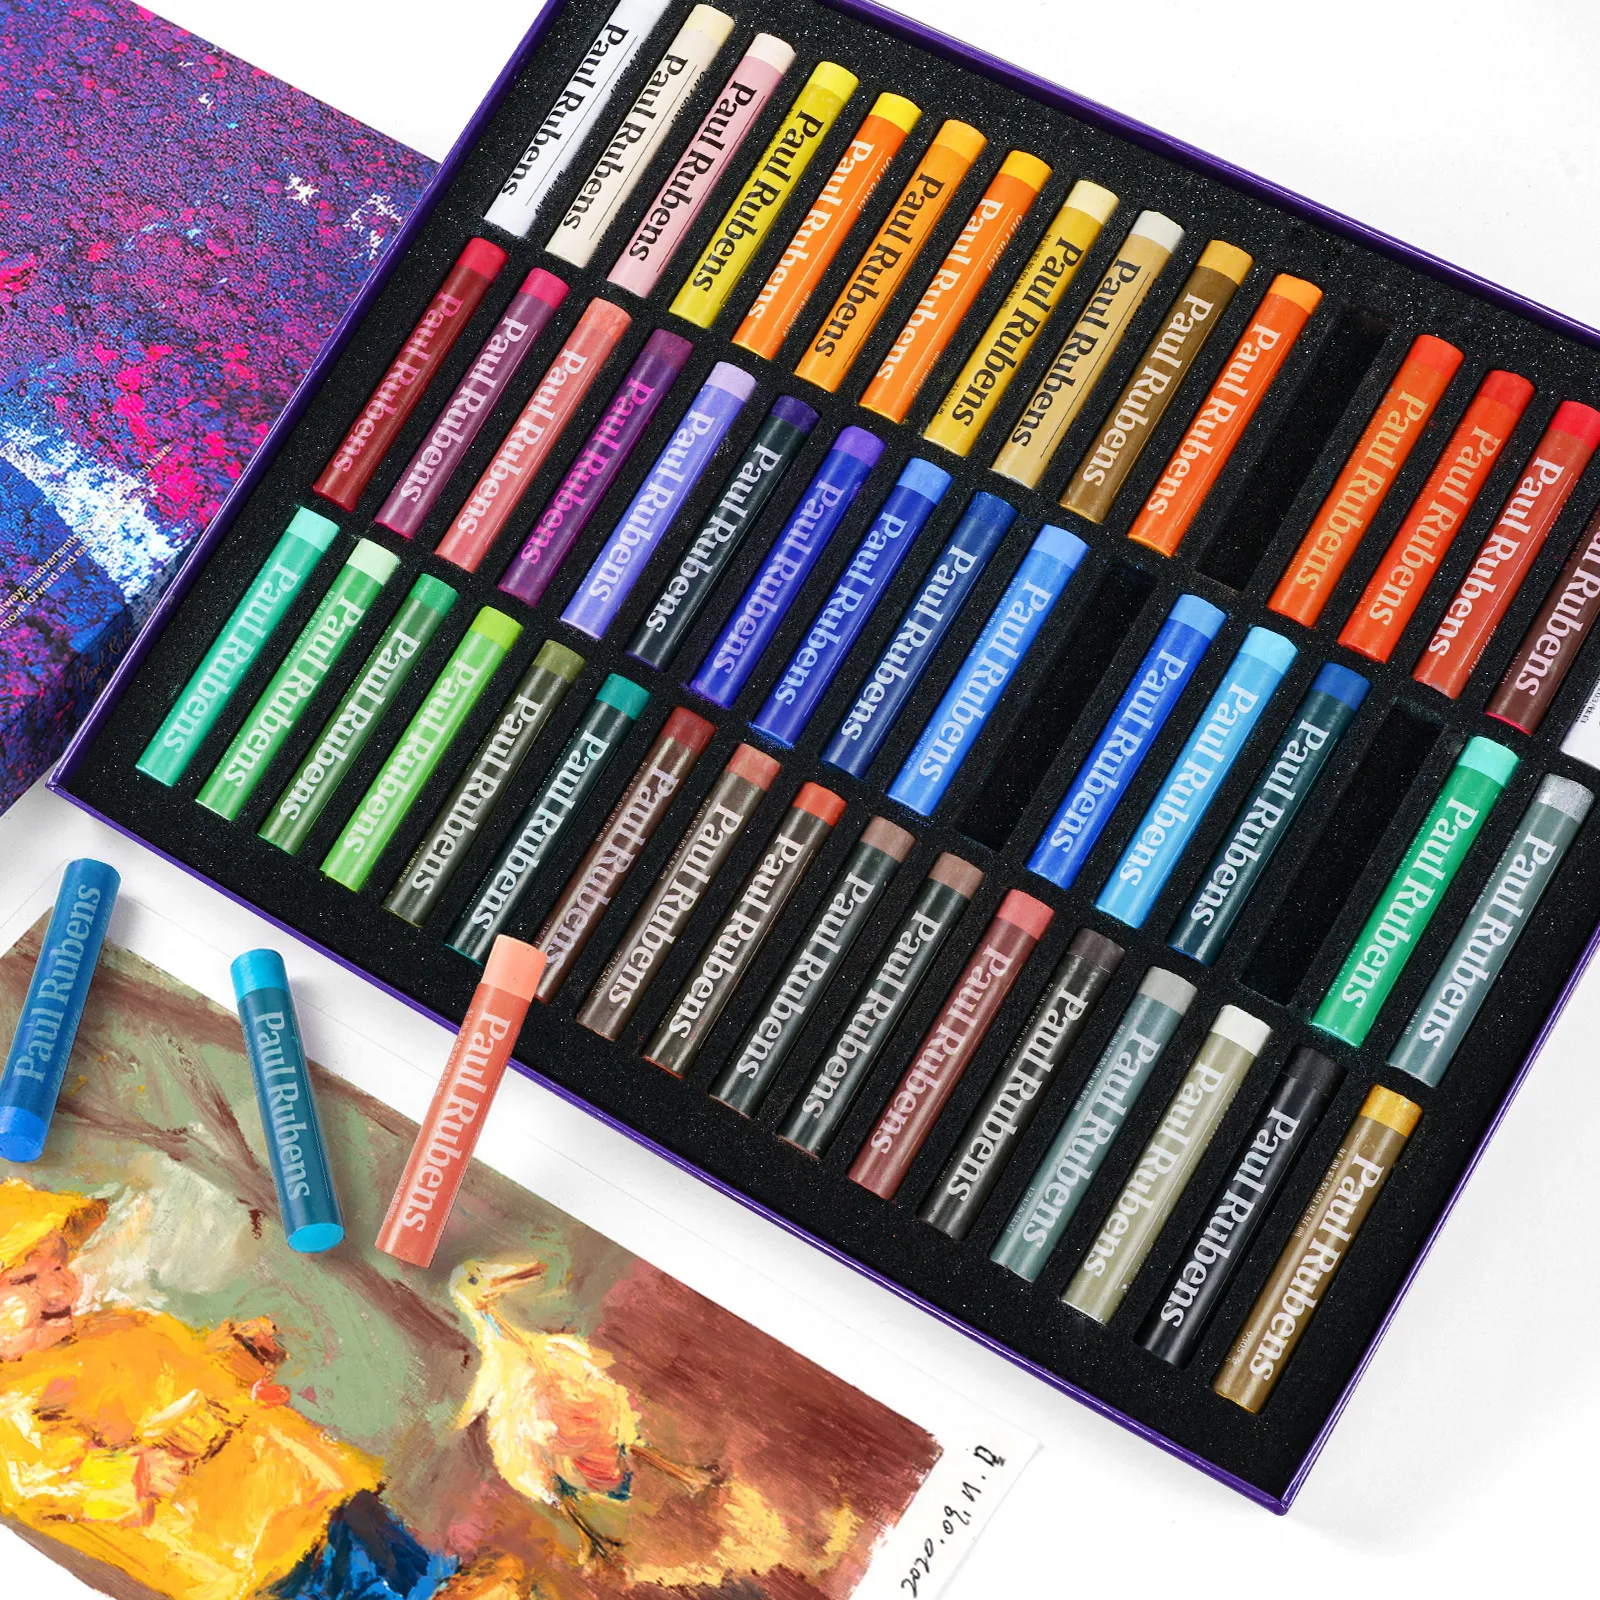 Wrubxvcd 48 colori pastelli ad olio In pittura Disegno Penna Per Studente Artista pastello dolce Graffiti 